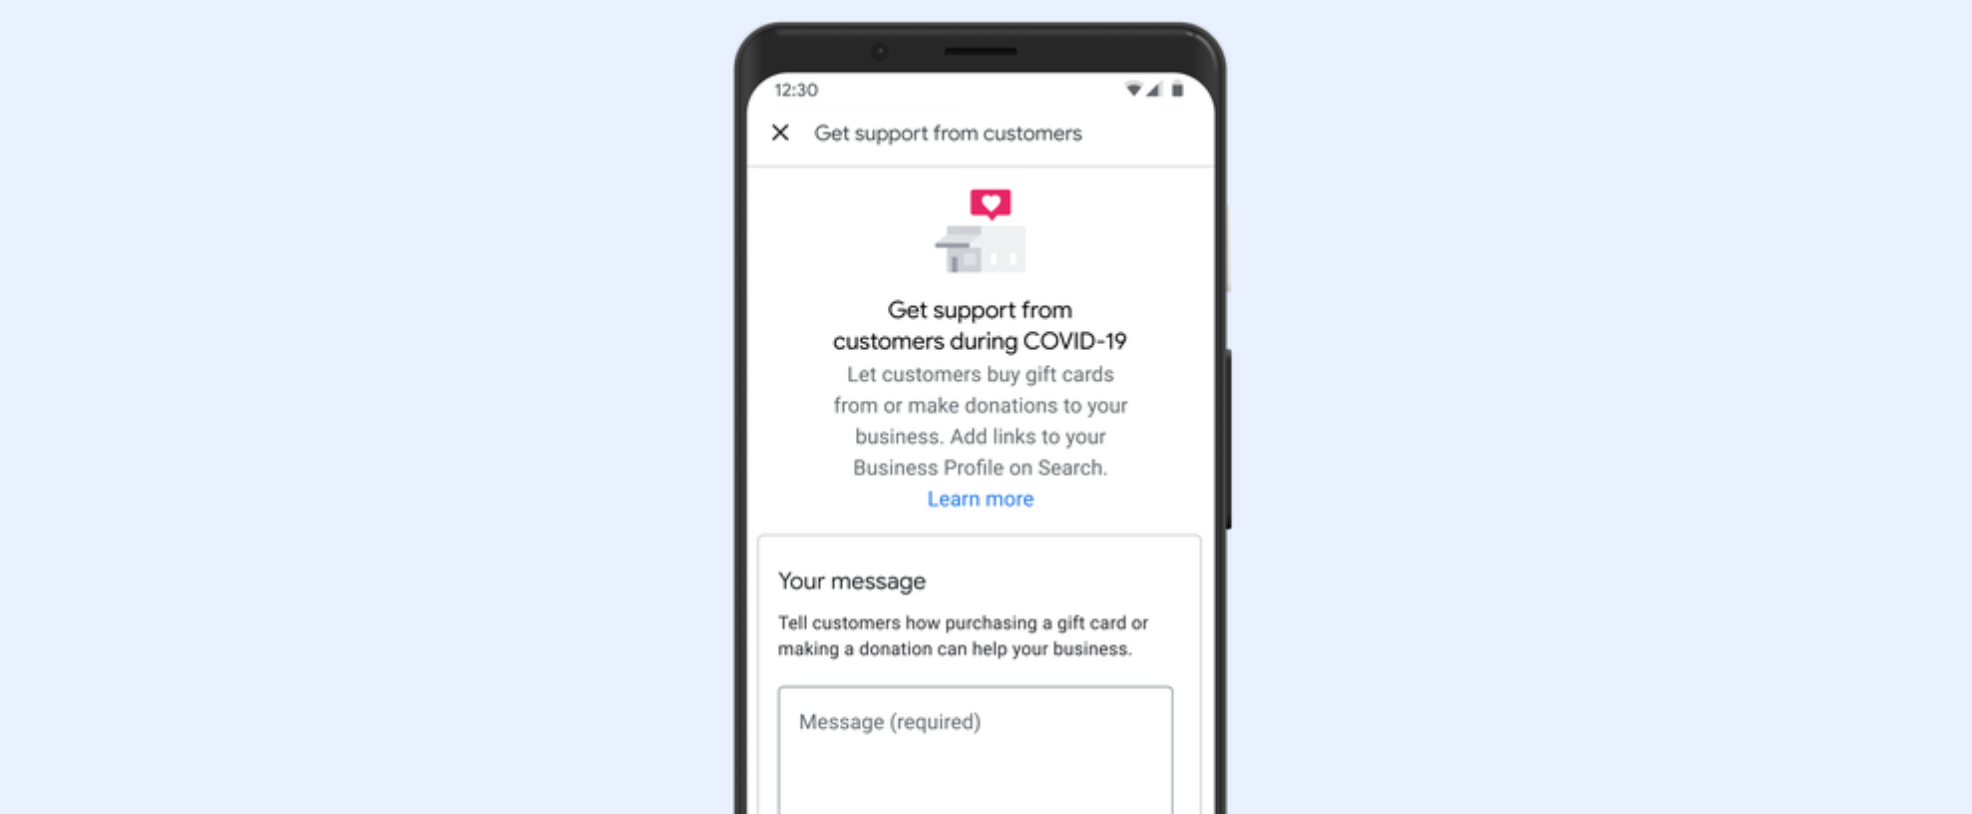 Google लोगों को स्थानीय व्यवसायों का समर्थन करने का एक तरीका जोड़ता है: दान और उपहार कार्ड के लिए लिंक व्यापार प्रोफाइल से जुड़ा हुआ है